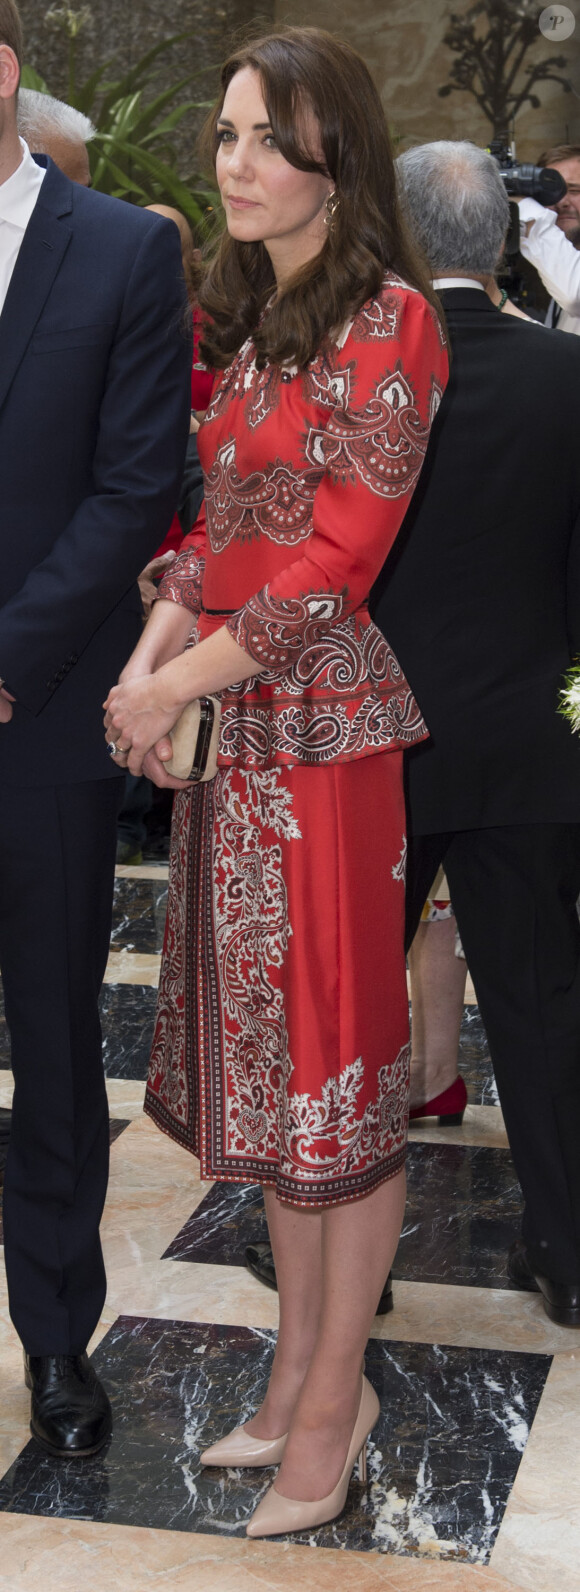 Kate Middleton, duchesse de Cambridge, en Alexander McQueen le 10 avril 2016 à Mumbai, lors de sa visite officielle en Inde et au Bhoutan (10-16 avril) avec le prince William